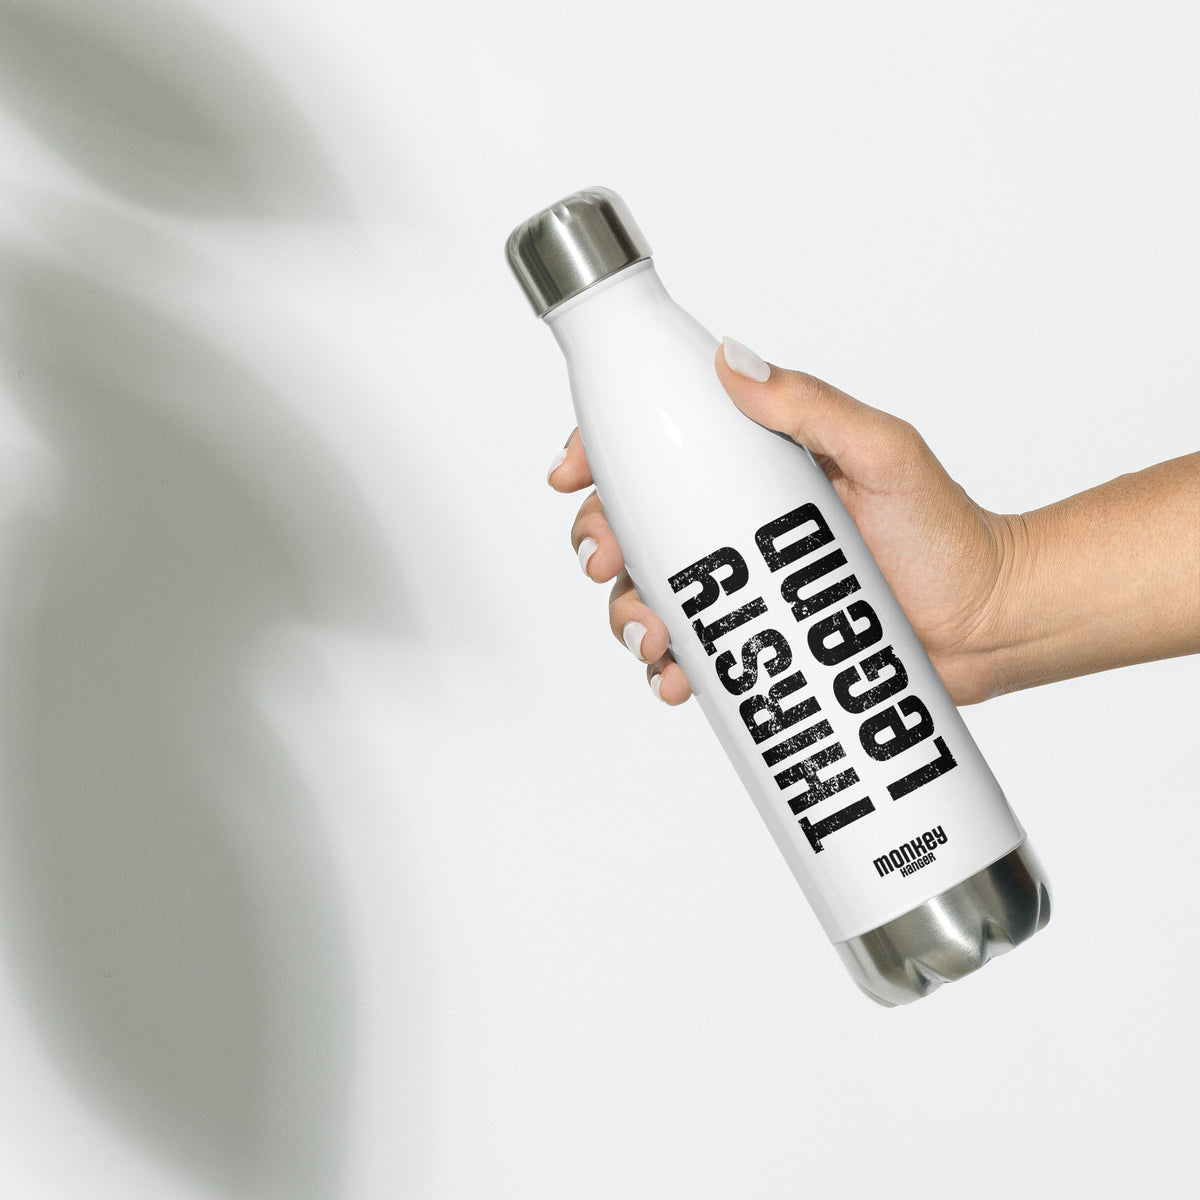 Thirsty Legend Water Bottle